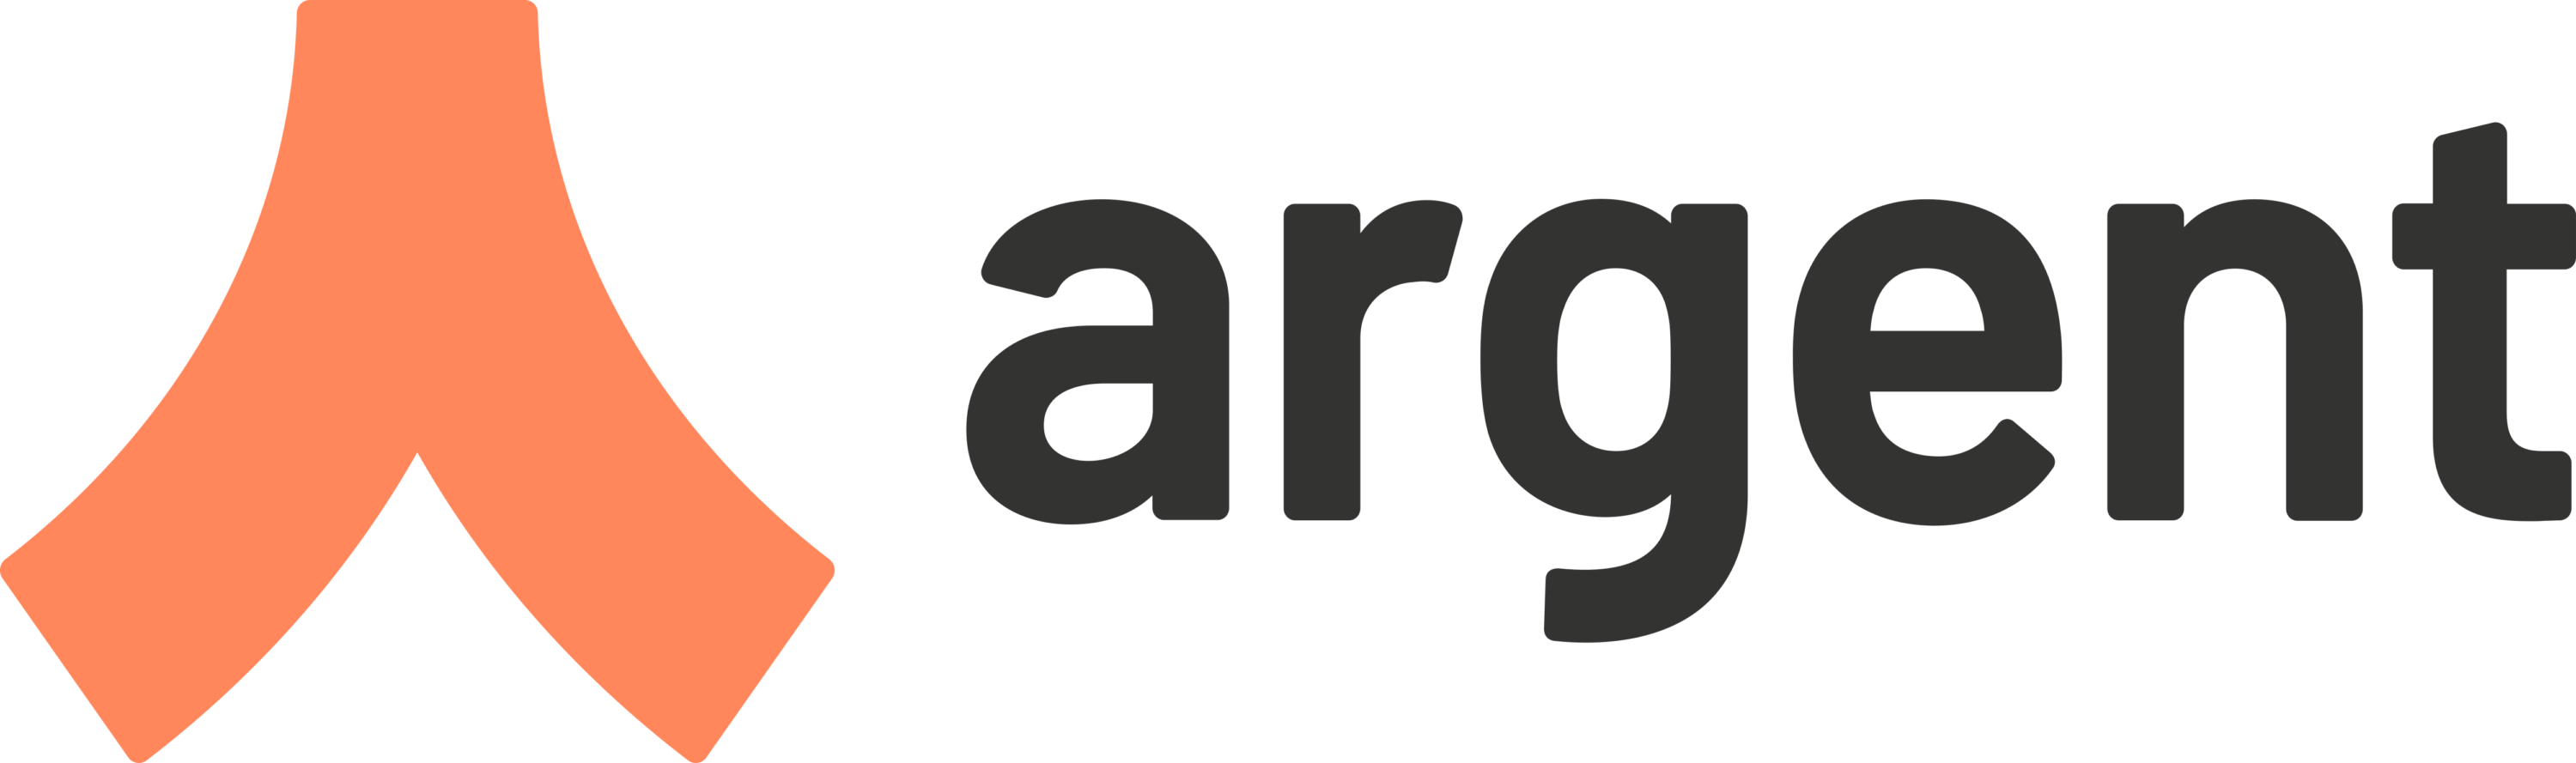 Argent Wallet Logo